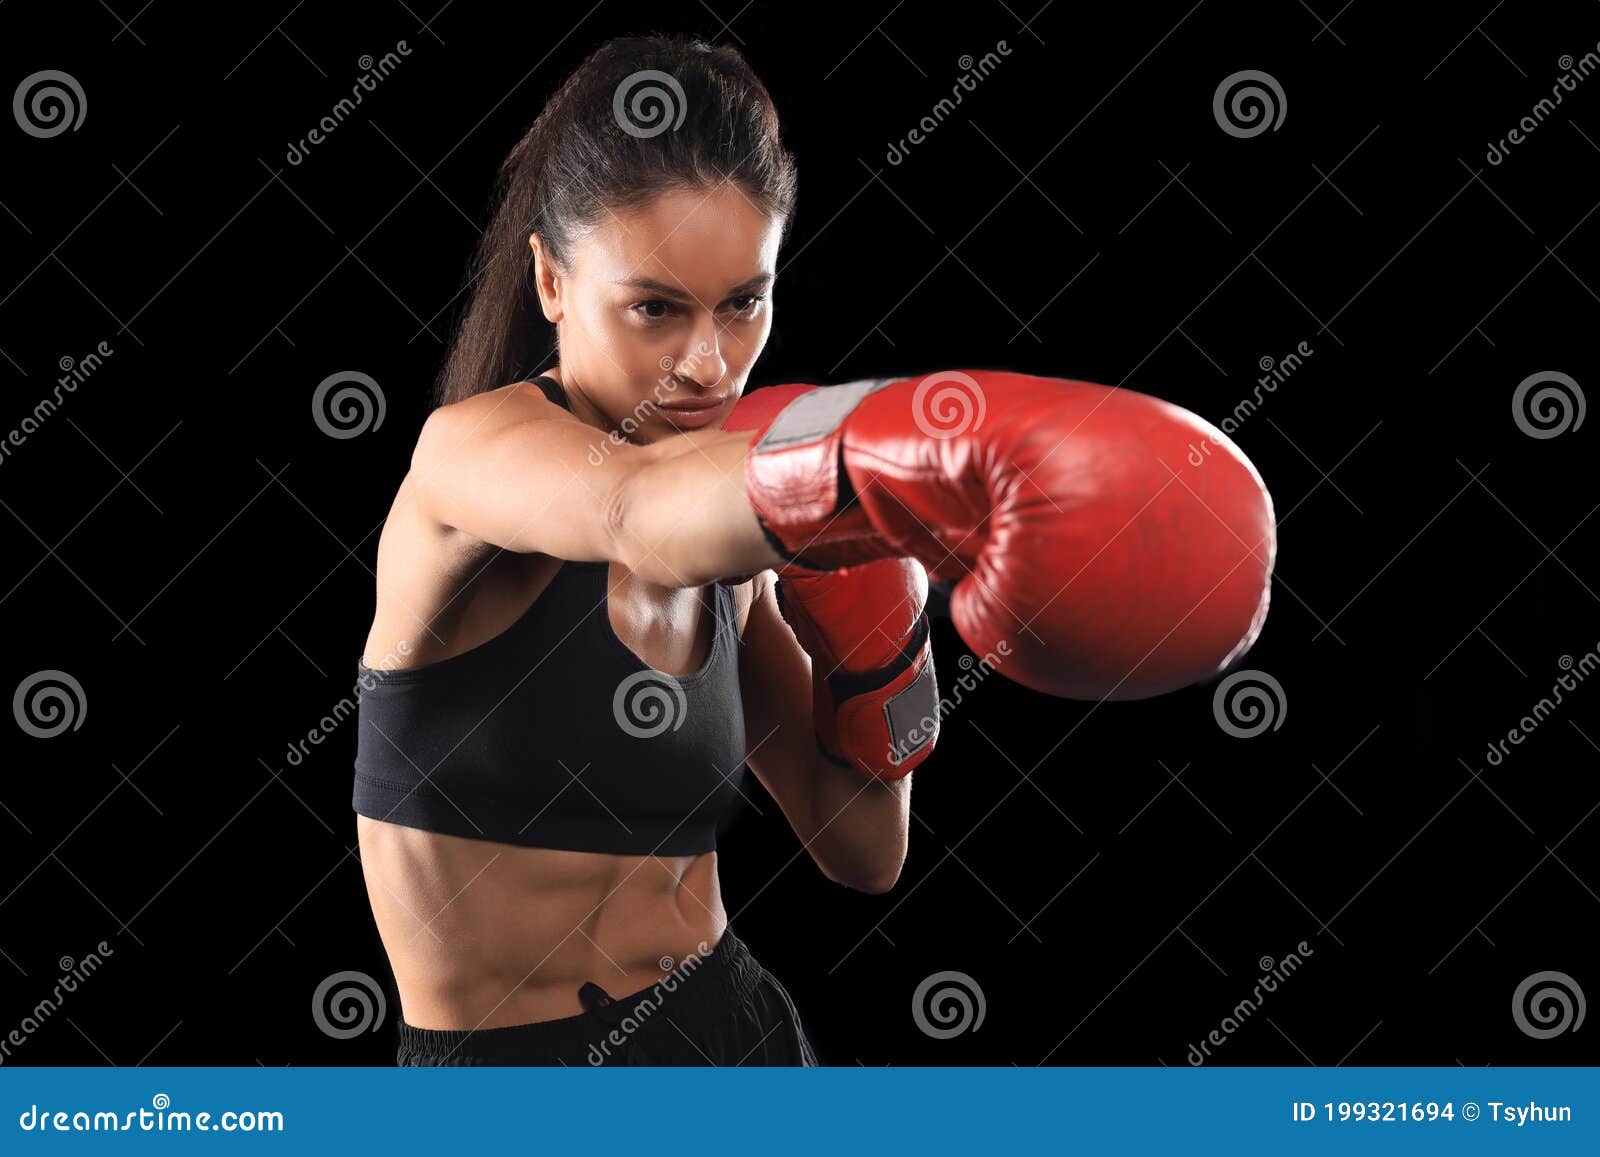 Mujer De Kickboxing En Activa Y De Kickboxing Rojo En Fondo Negro Representando Un Tiro De Artes Marciales Foto de archivo - Imagen de sacador, 199321694